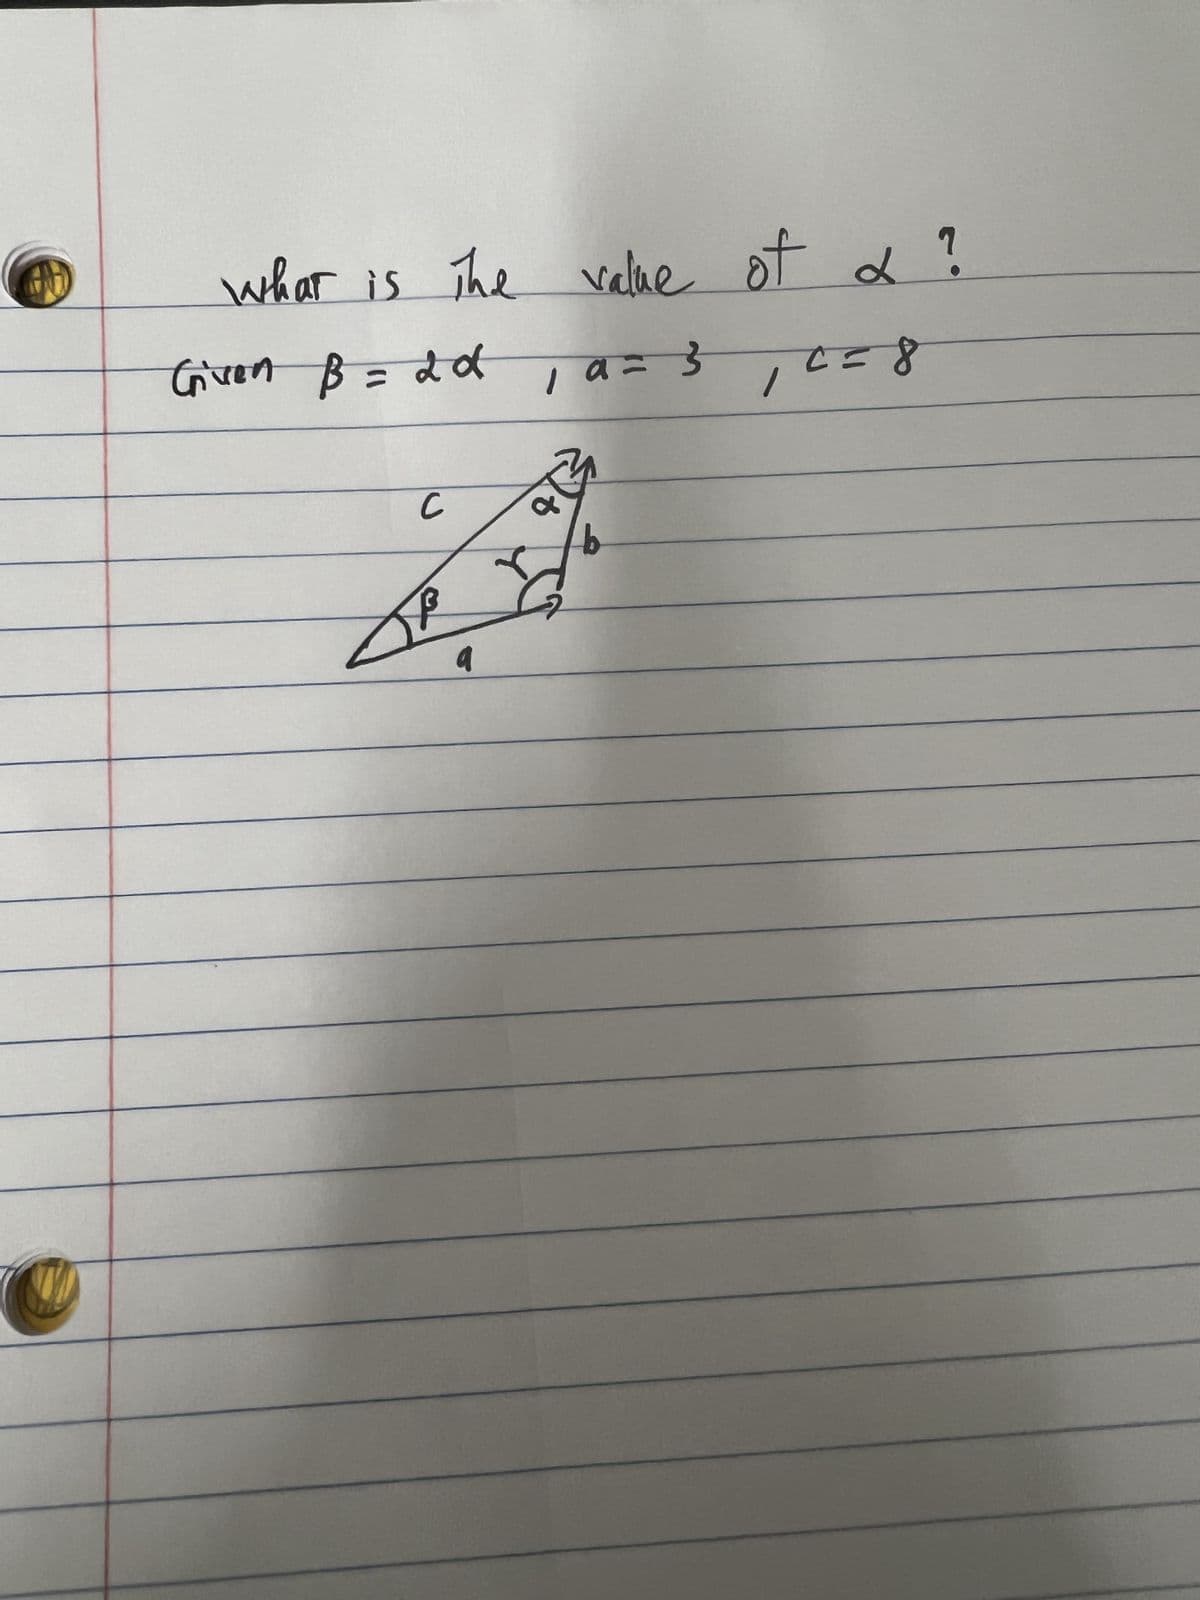 what is the value of a ?
Given B = 2d, a= 3
с
1 α= 3₁ C = 8
t
b